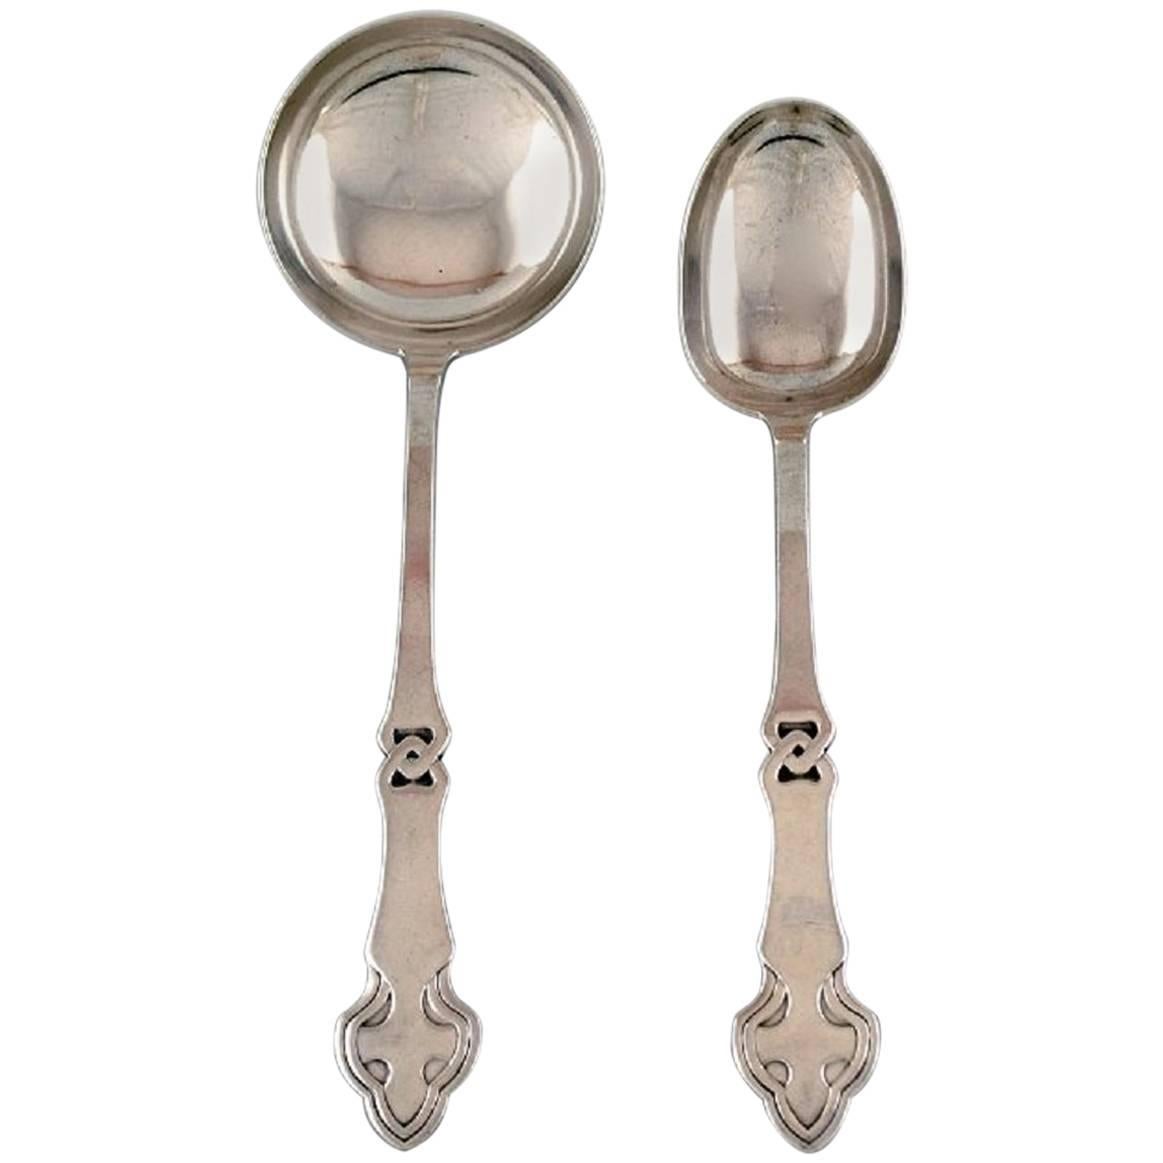 Danish Art Nouveau Two Serving Spoons, Silver, 1910s-1920s. For Sale